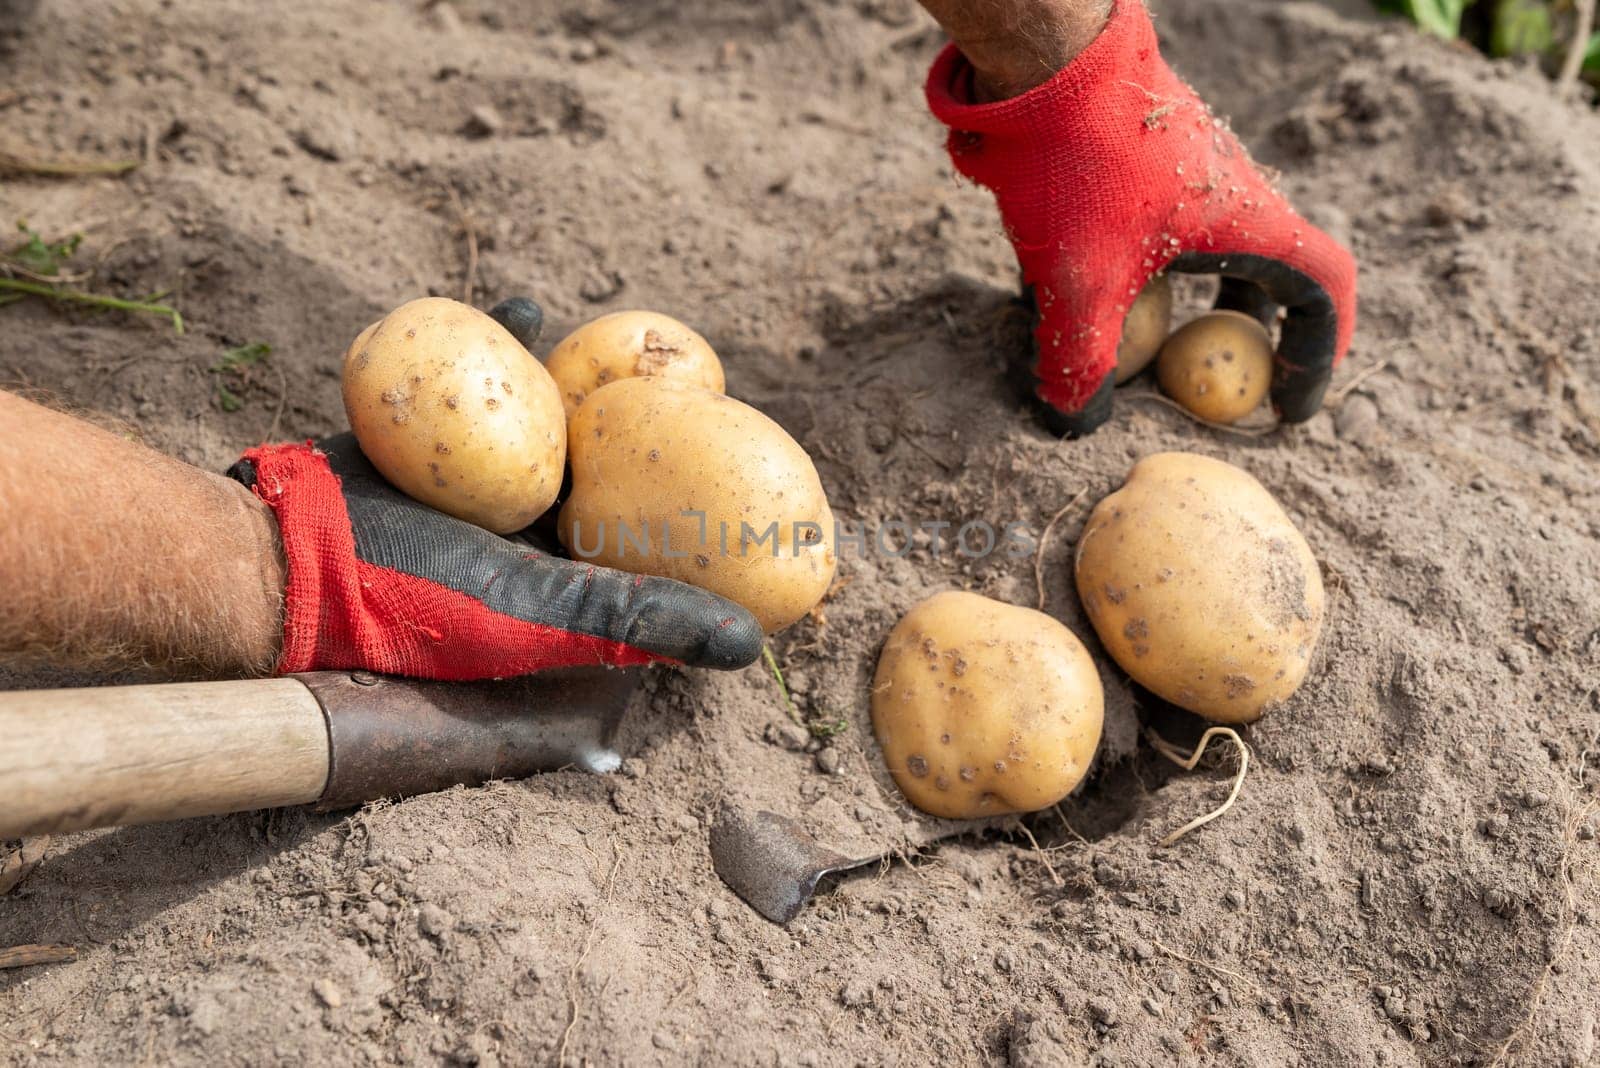 Digging potato, private garden, grow potato by yourself